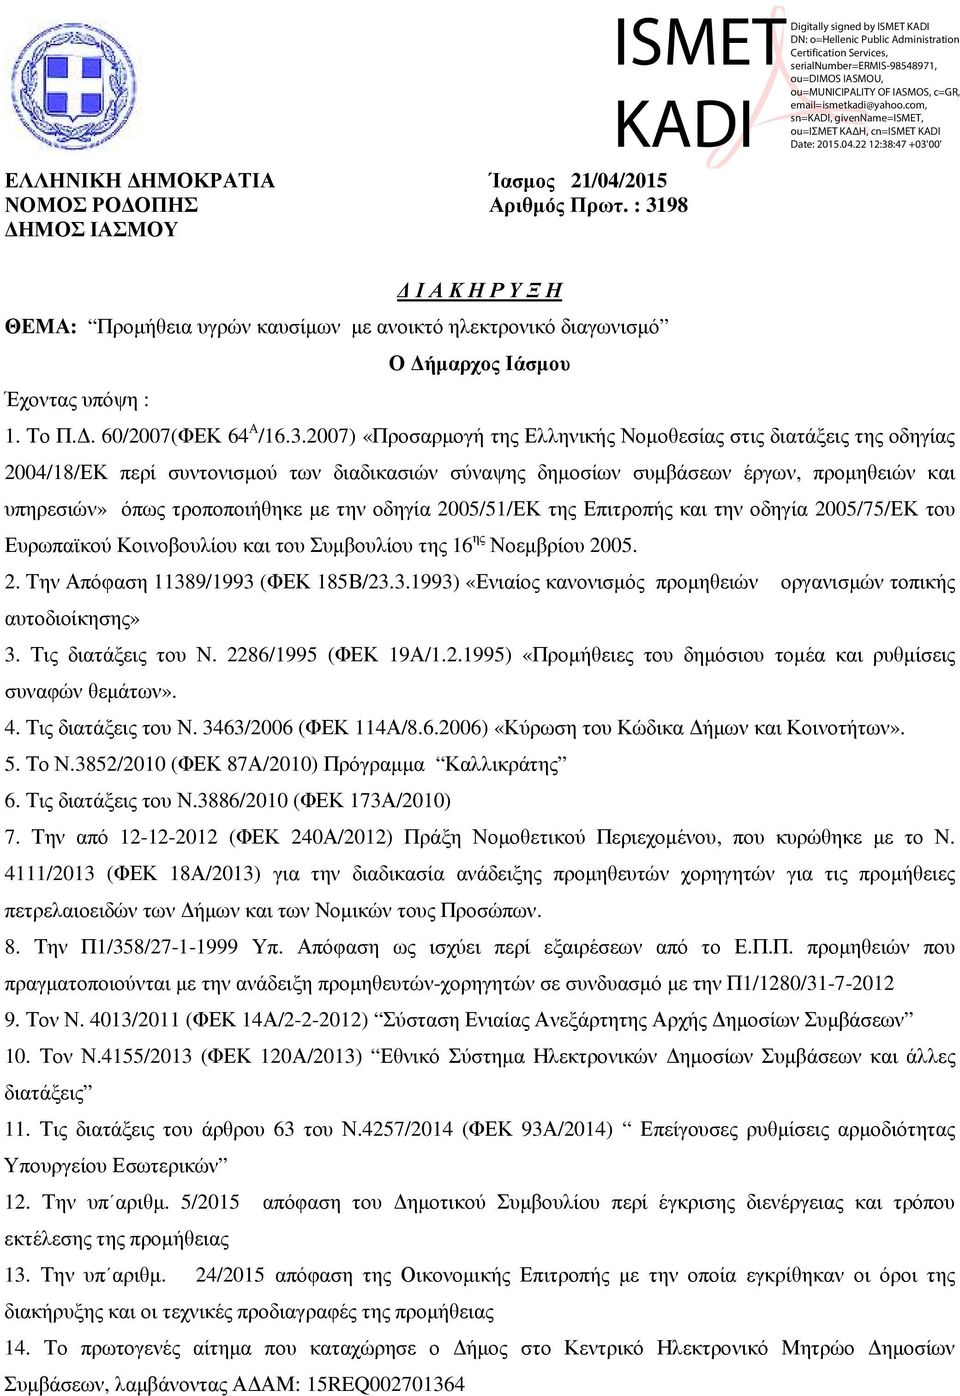 2007) «Προσαρµογή της Ελληνικής Νοµοθεσίας στις διατάξεις της οδηγίας 2004/18/ΕΚ περί συντονισµού των διαδικασιών σύναψης δηµοσίων συµβάσεων έργων, προµηθειών και υπηρεσιών» όπως τροποποιήθηκε µε την